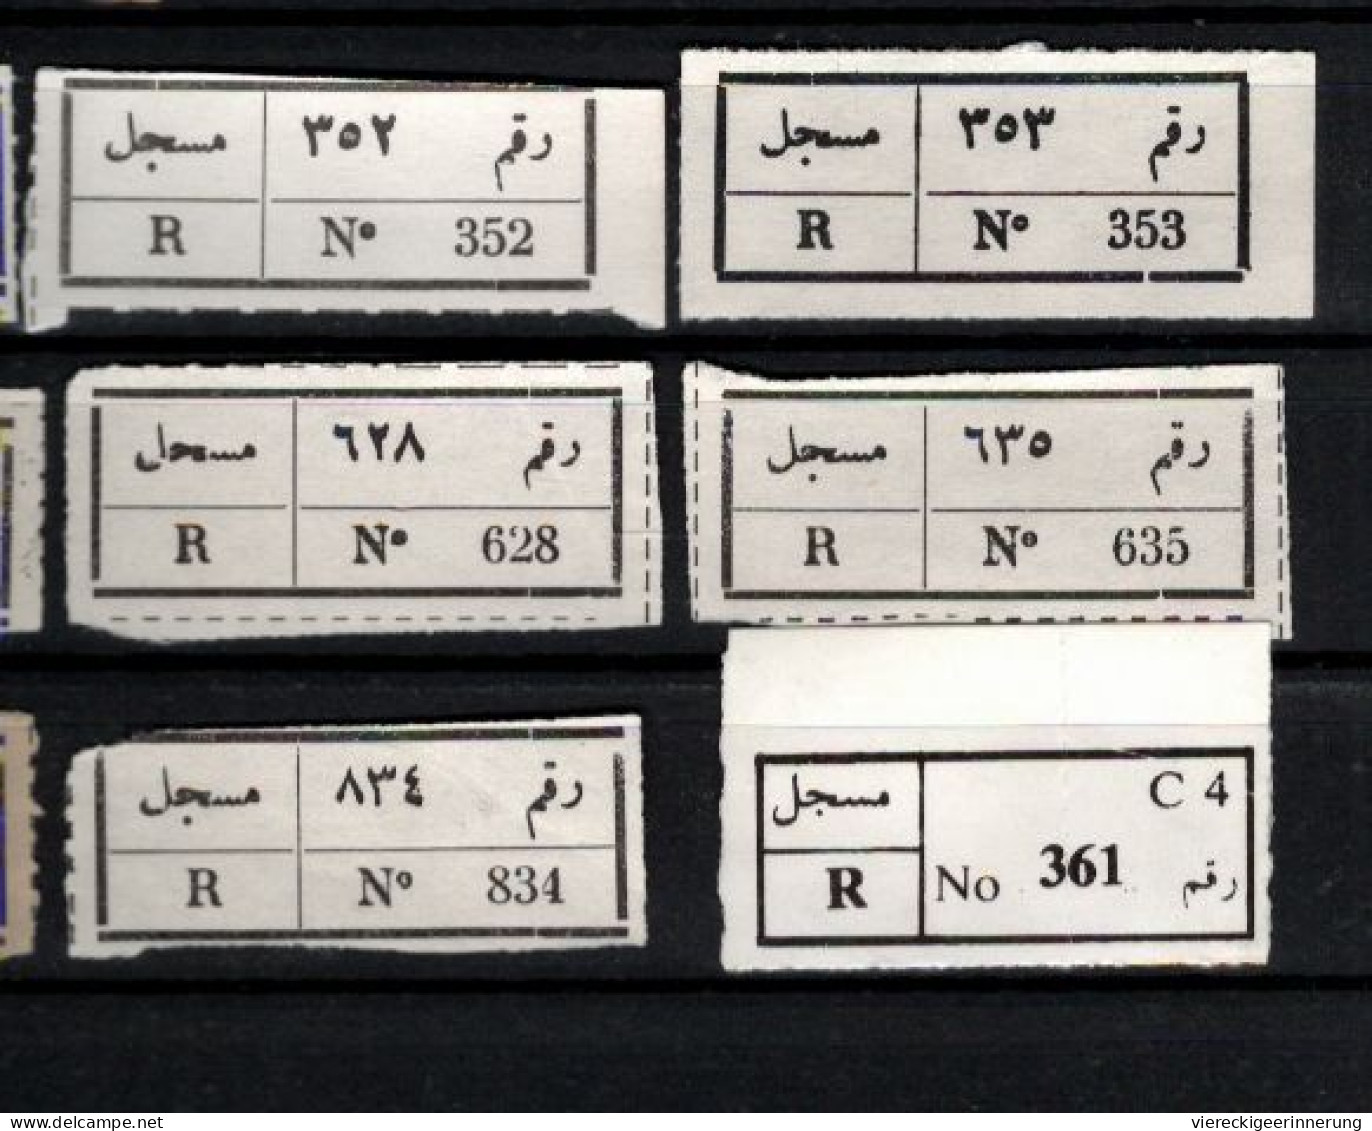 ! 1 Steckkarte Mit 14 R-Zetteln Aus Jemen, Yemen ?, Asmara, Sanaa, Einschreibzettel, Reco Label - Jemen